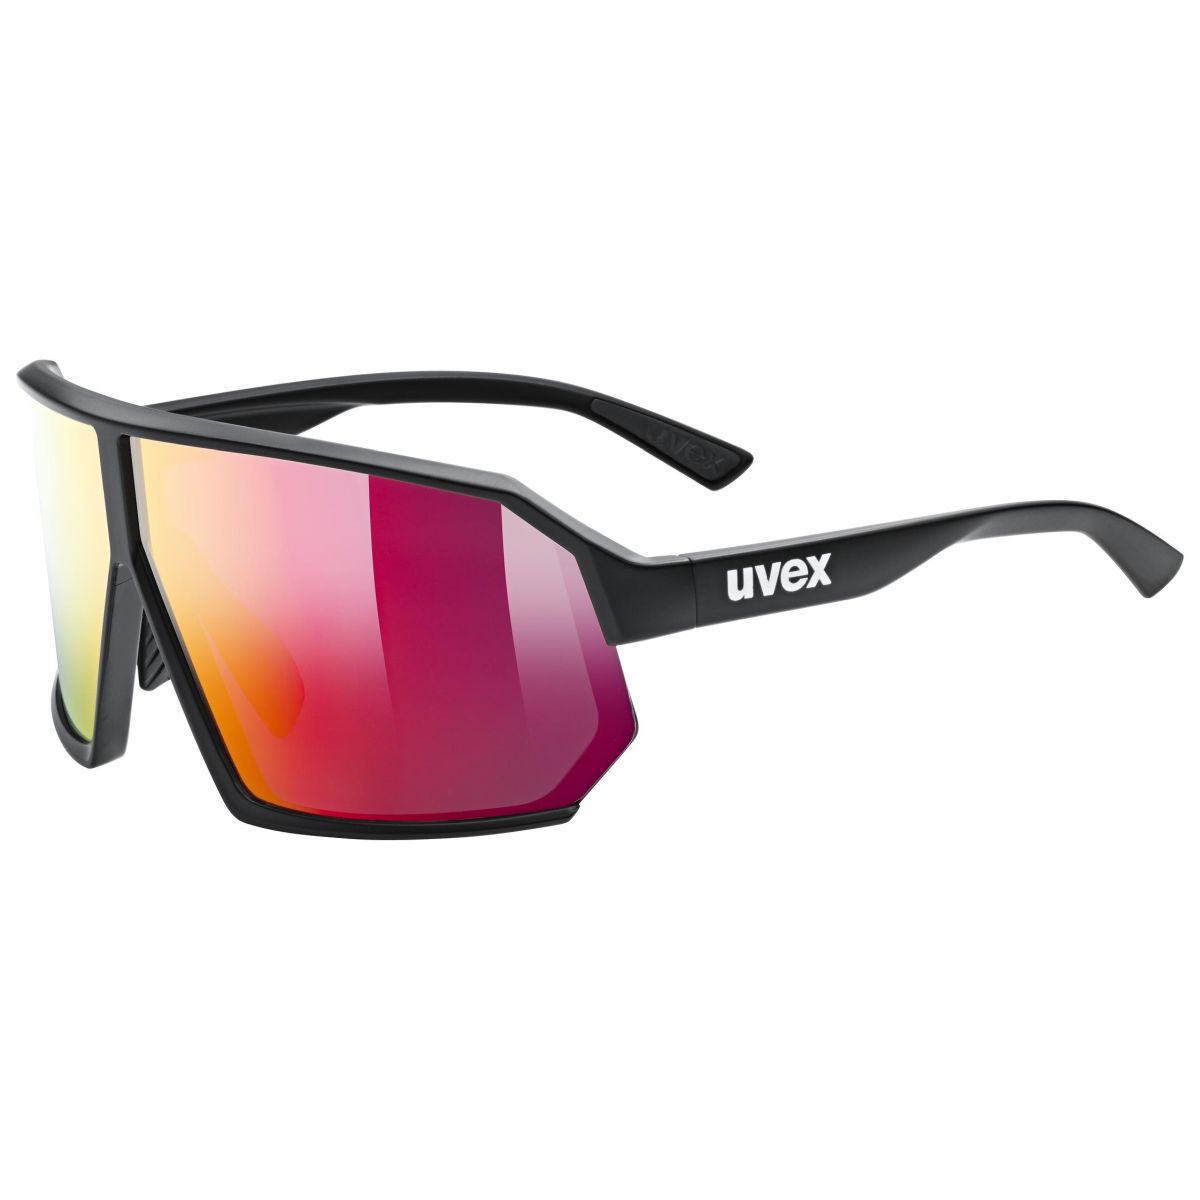 Produktbild von Uvex sportstyle 237 Brille - black matt/mirror red